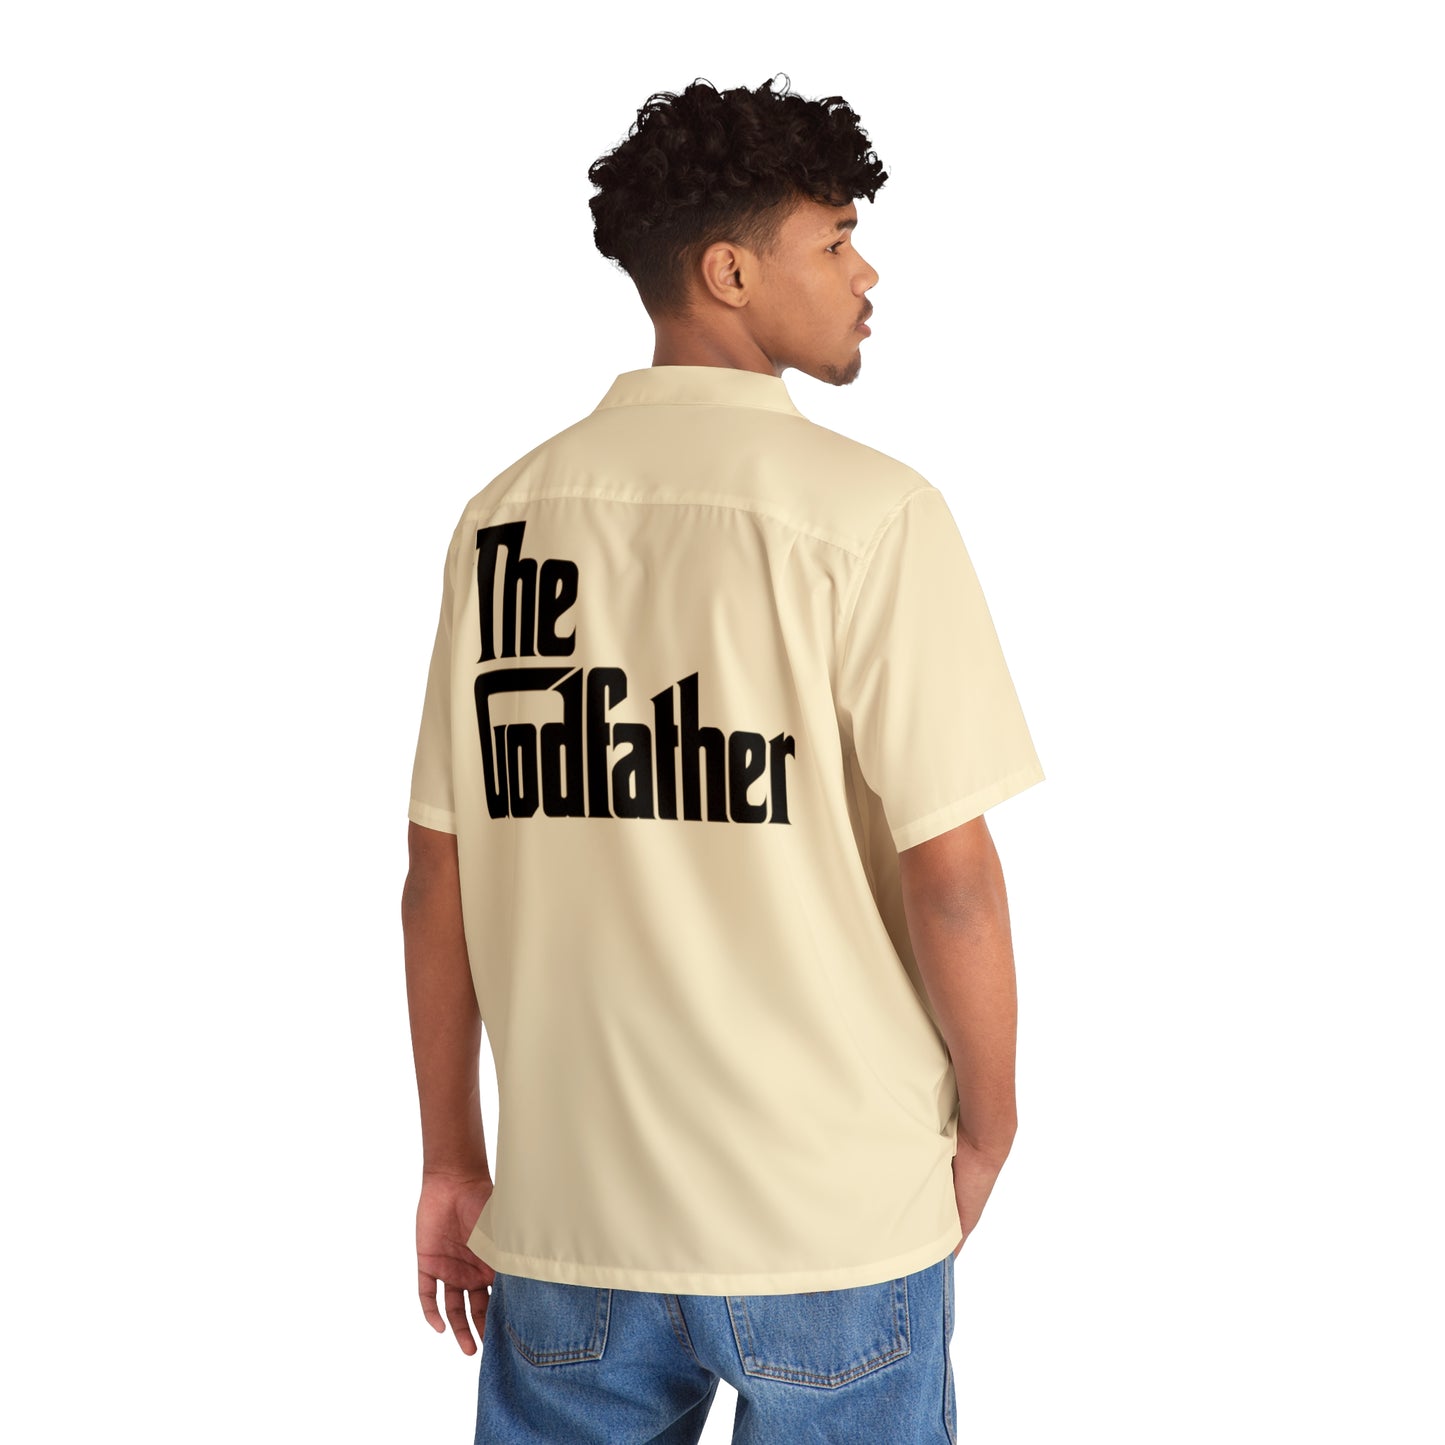 Hawaiian Shirt The Godfather